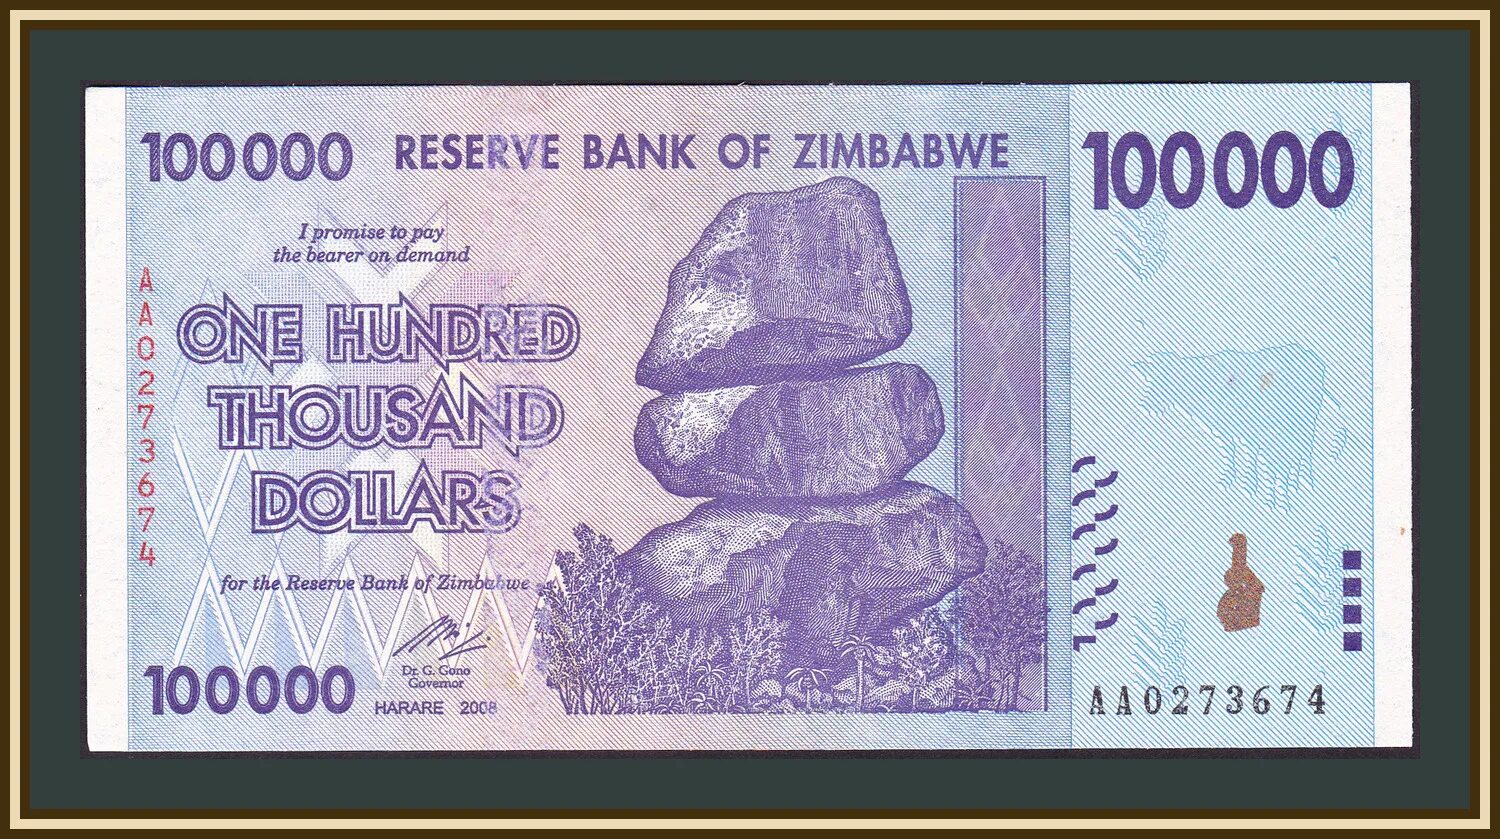 00 долларов в рублях. Купюра 10 триллионов долларов Зимбабве. Купюра 100 триллионов долларов Зимбабве. 100 000 000 000 000 Долларов Зимбабве. Купюра в 1 миллиард долларов Зимбабве.